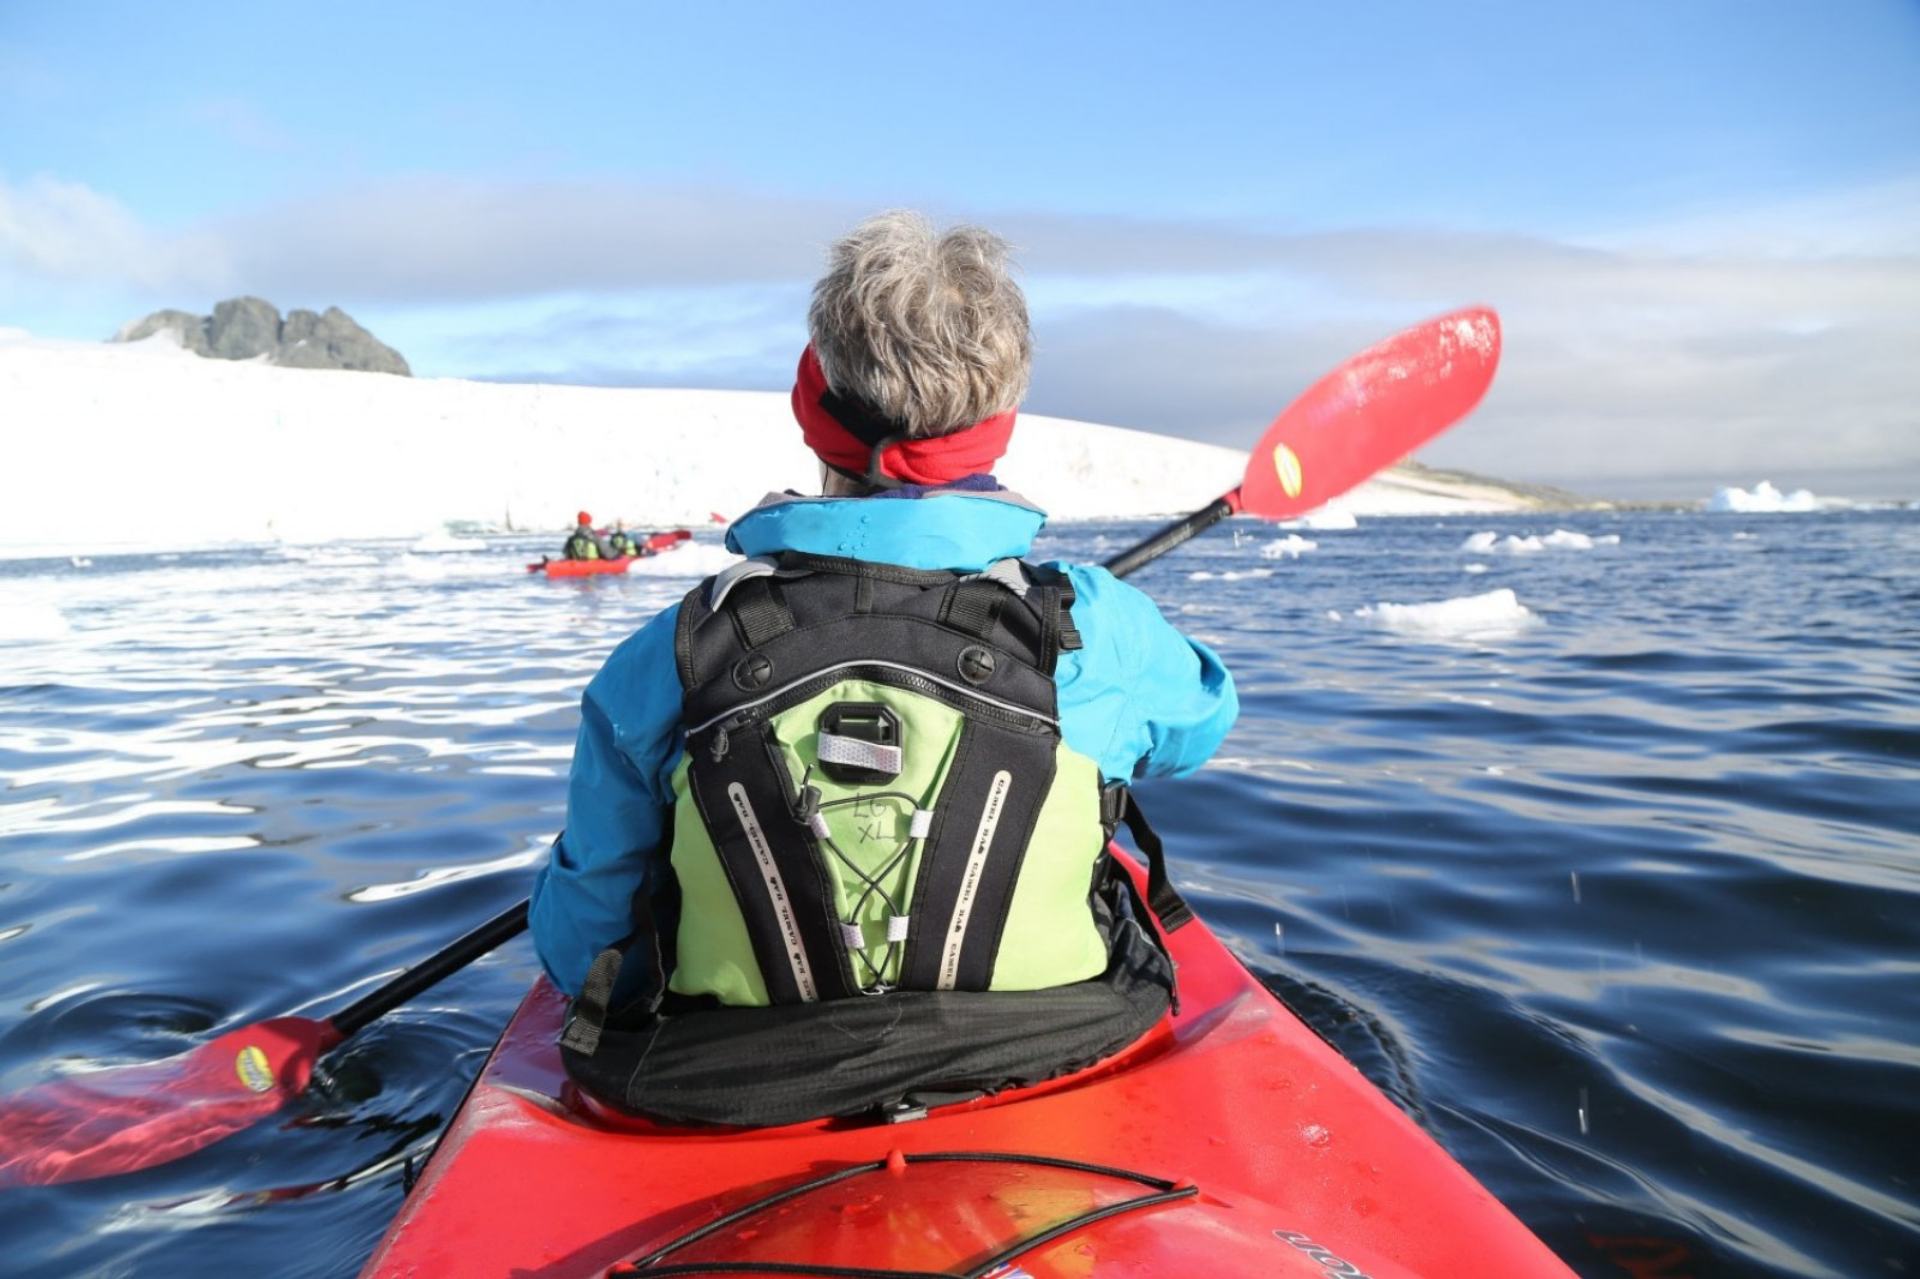 南极洲 - 基地营 - 免费露营,划艇,雪鞋/徒步旅行,登山,摄影工作室